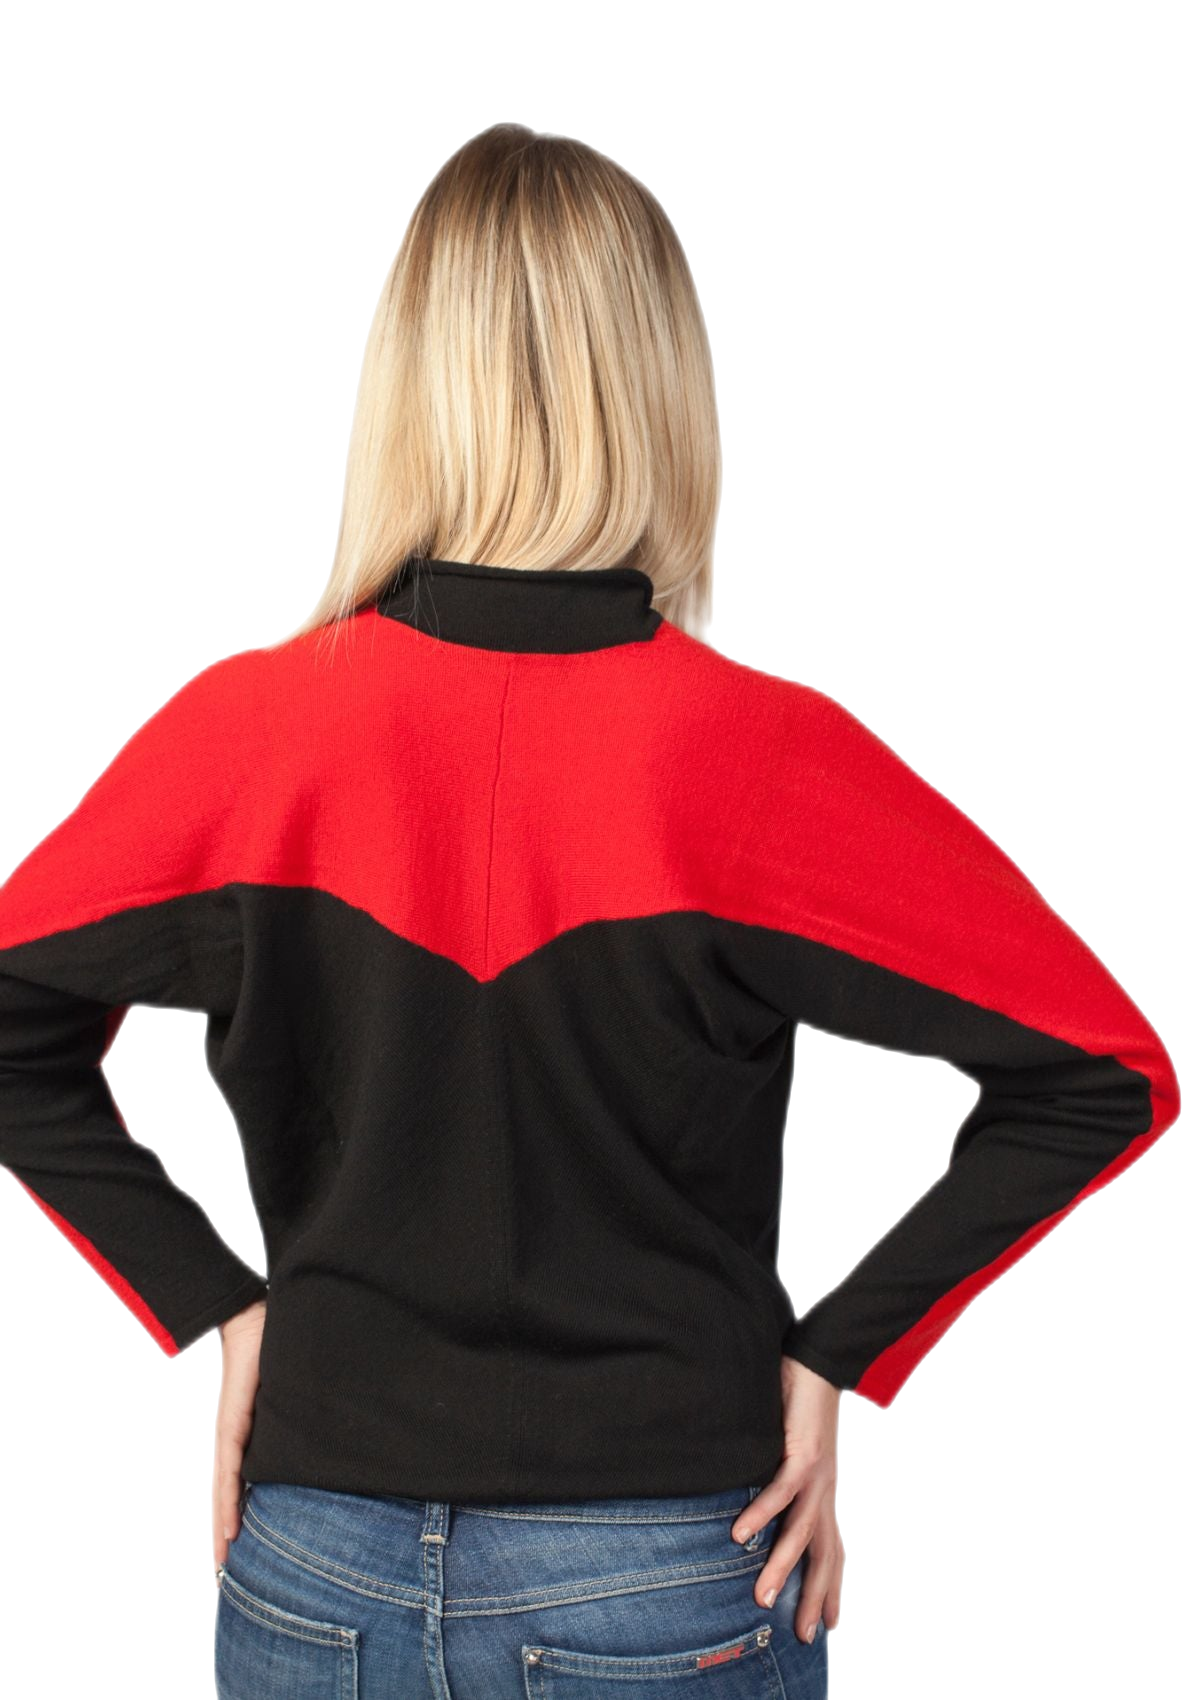 retro maglia raglan donna bicolore in pura lana merino nera e rossa